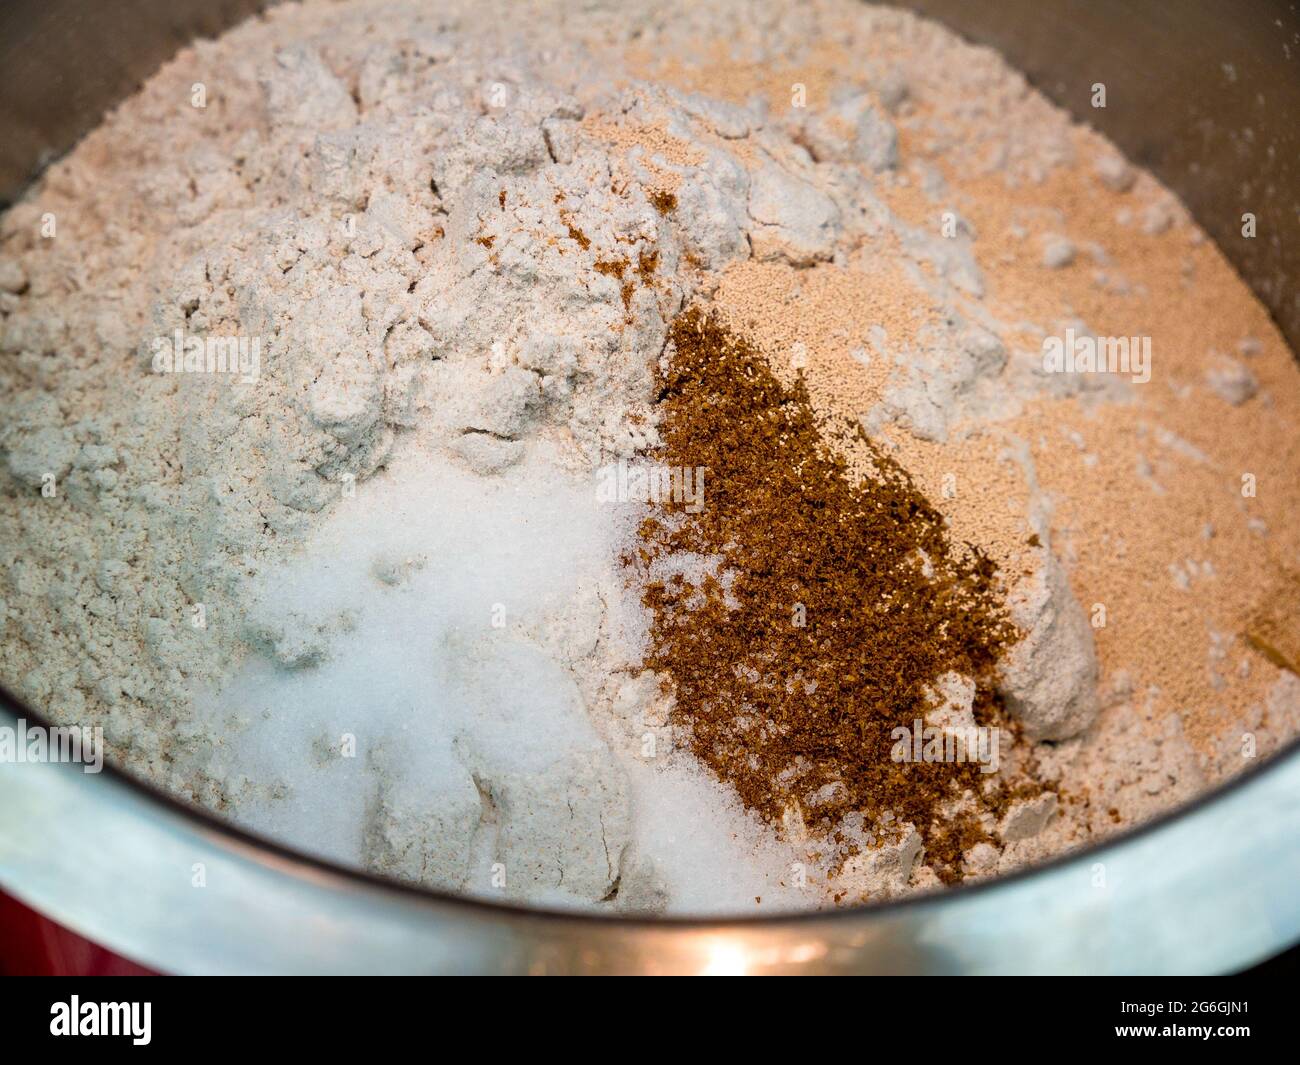 Farina di segale, sale, cumino macinato e lievito secco in un recipiente in acciaio inox - base per l'impasto del pane - fuoco selettivo Foto Stock